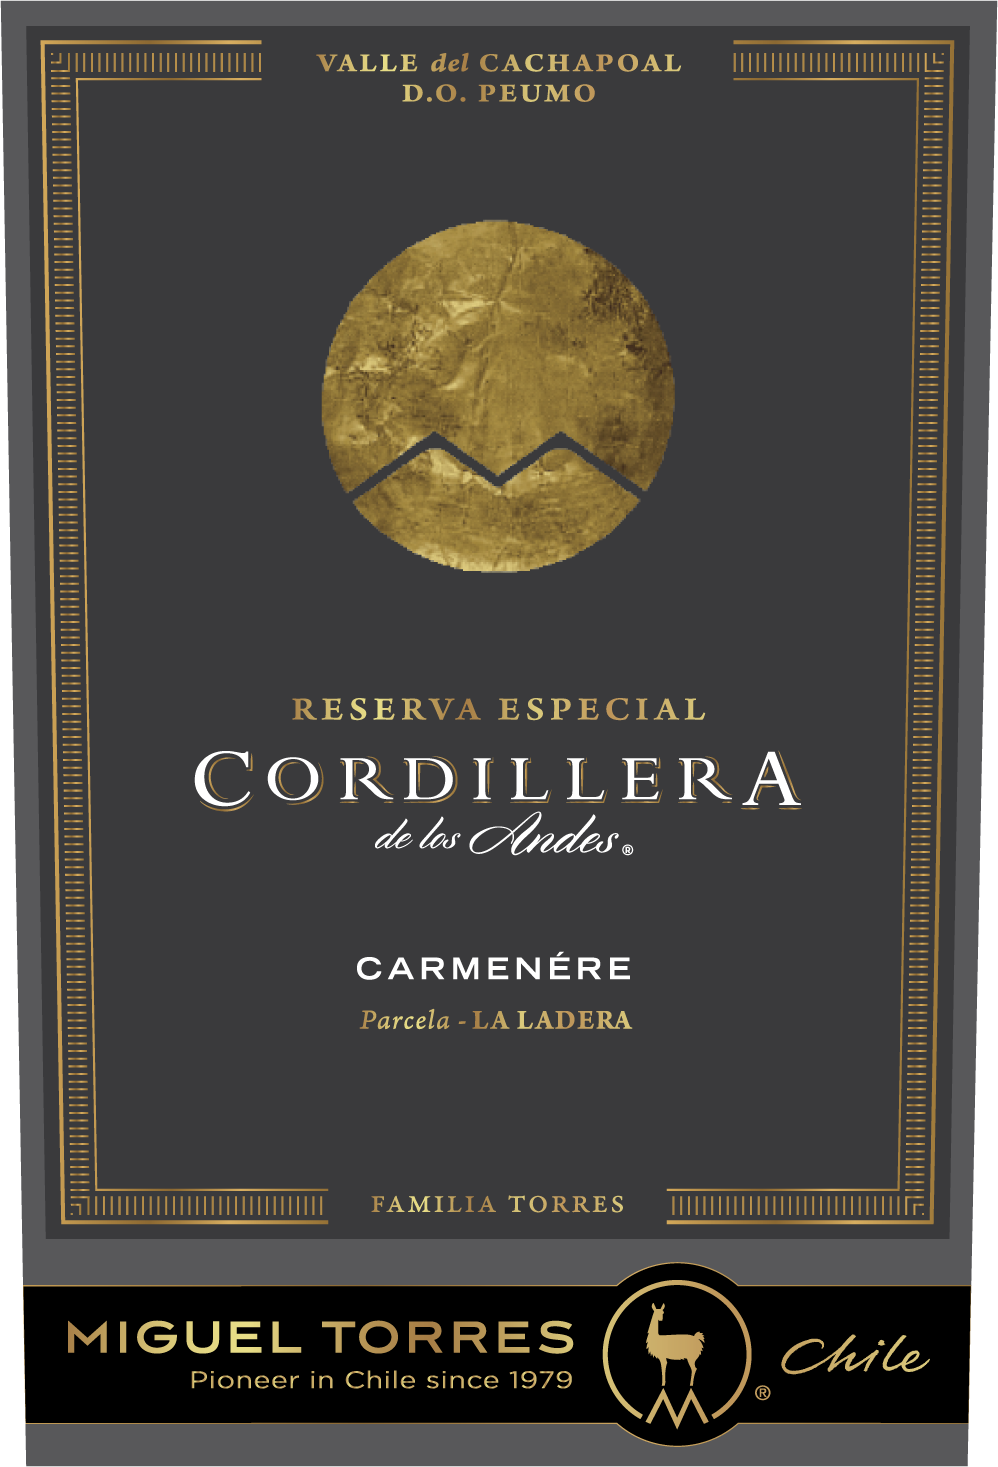 - About & Wine Buy Online Learn Carmenere